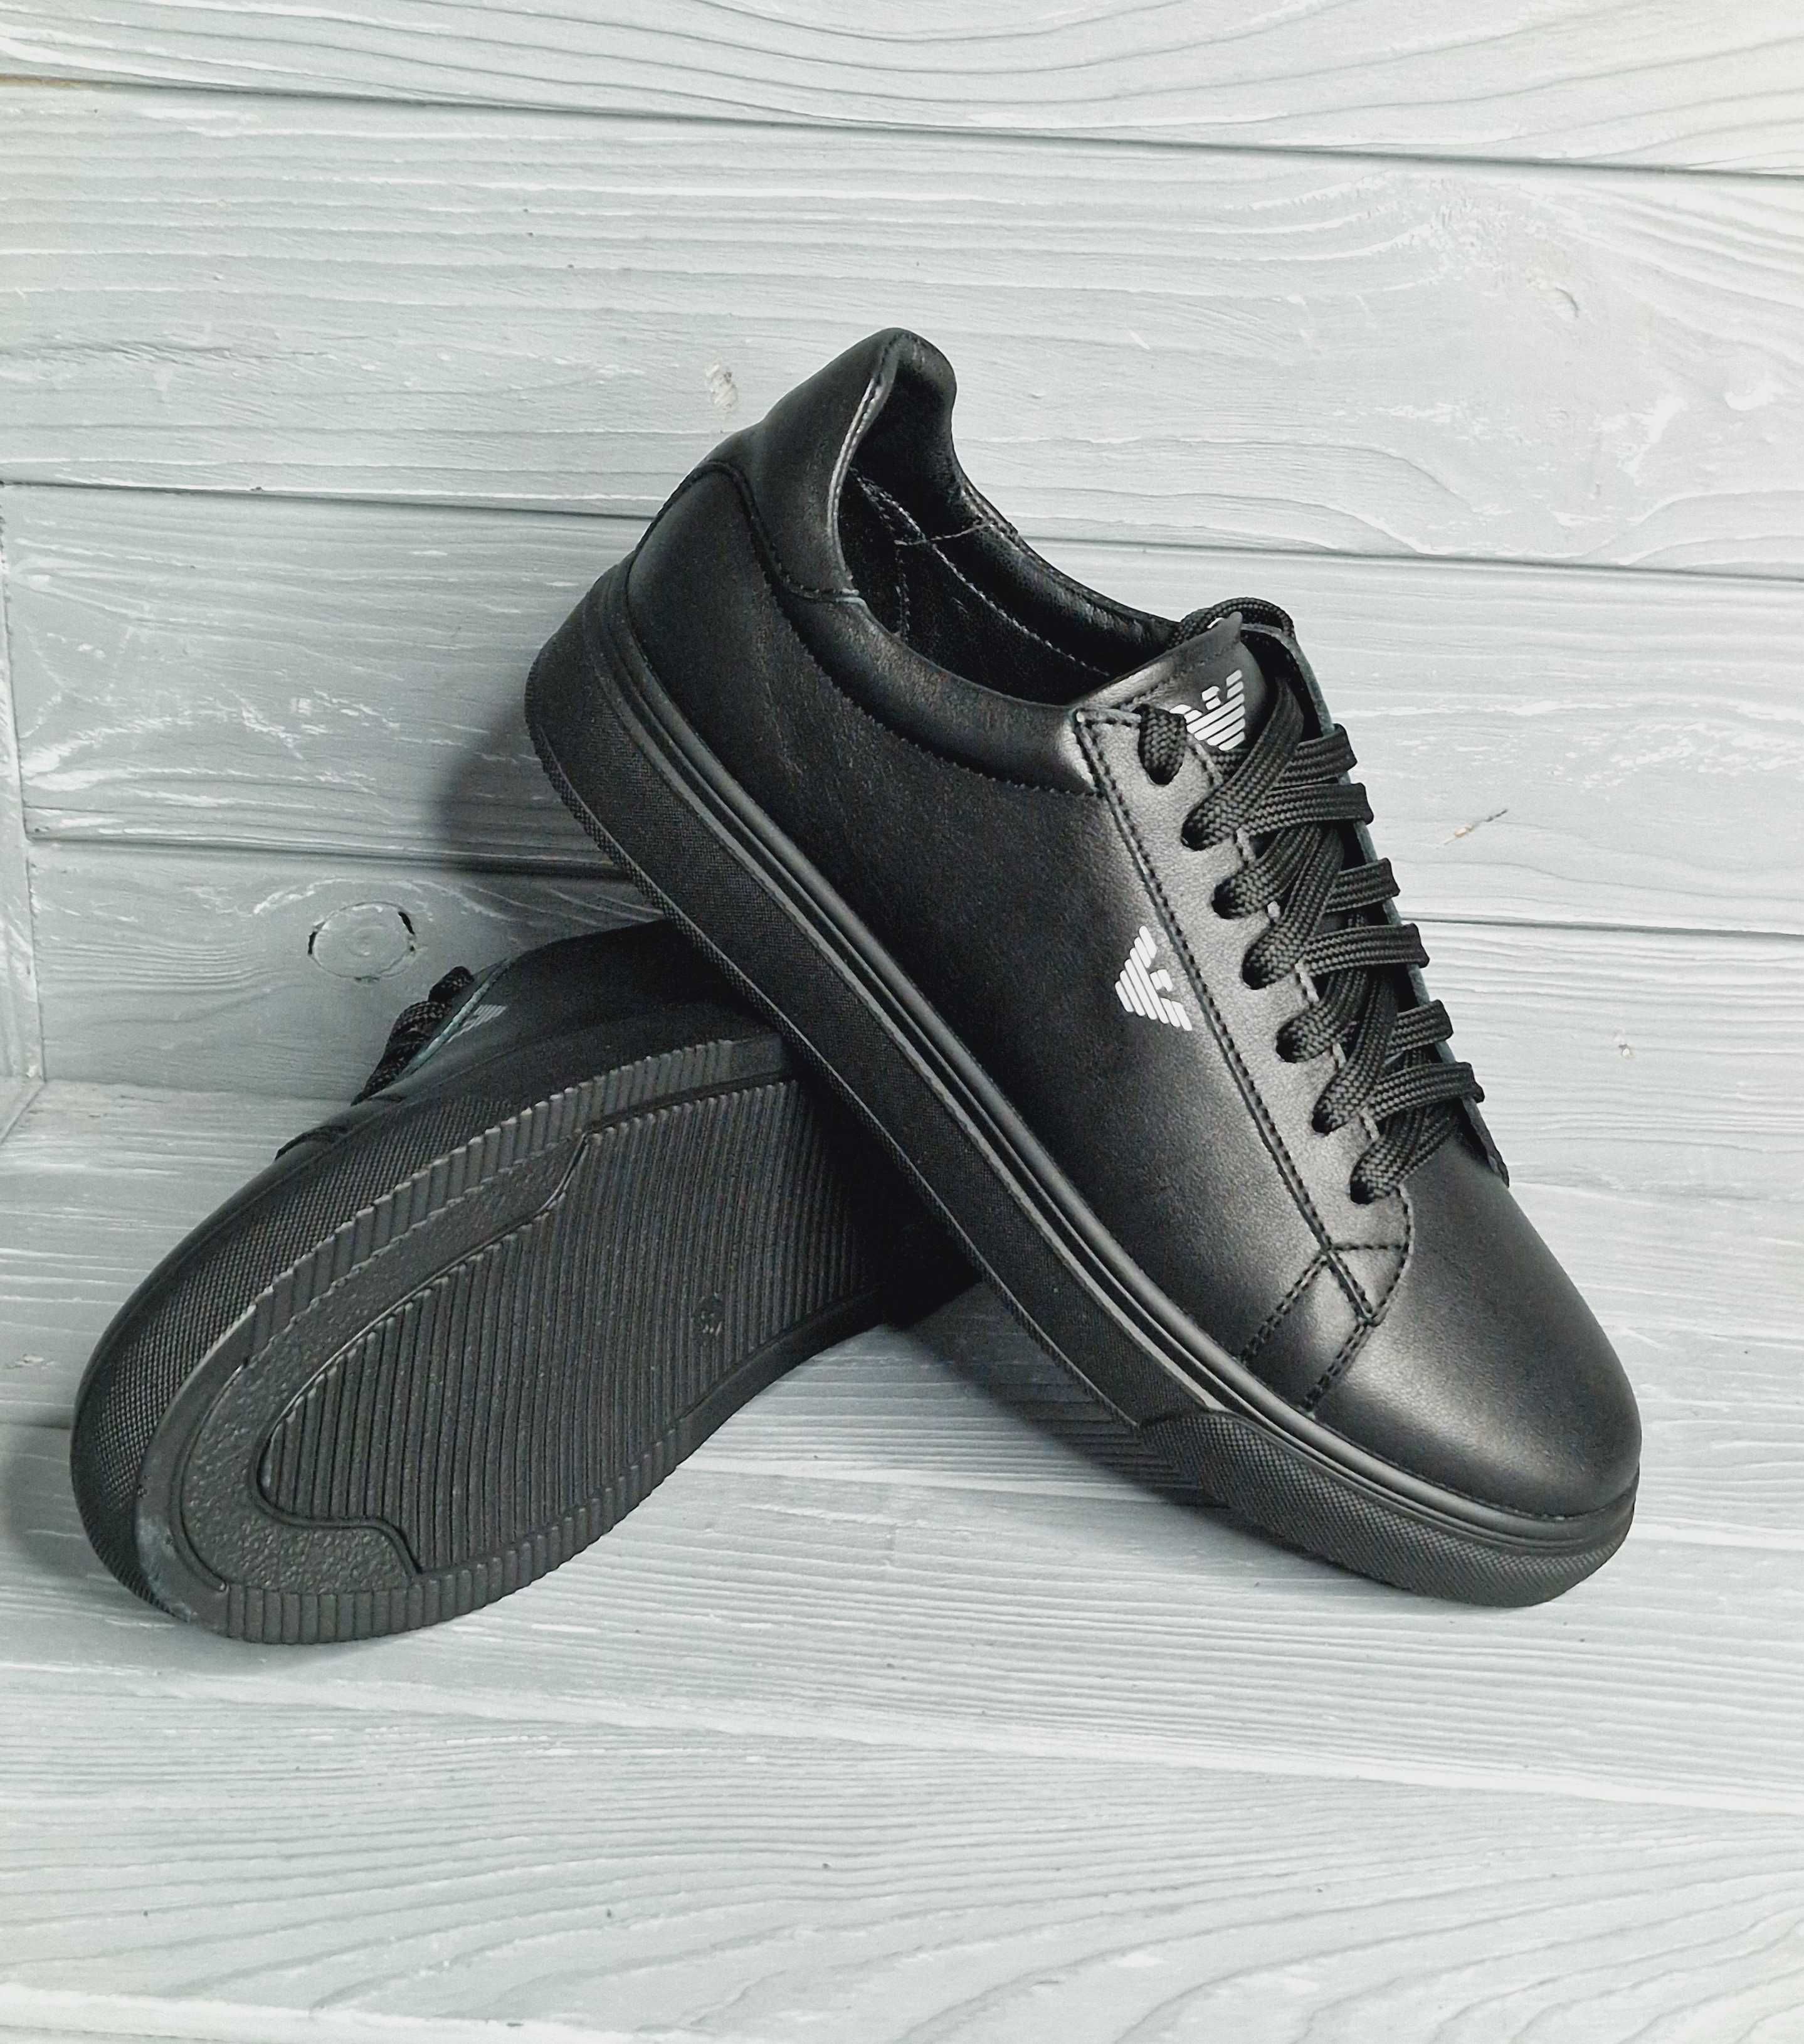 Кожаные базовые черные/белые женские кроссовки / кеды стиль Armani!!!